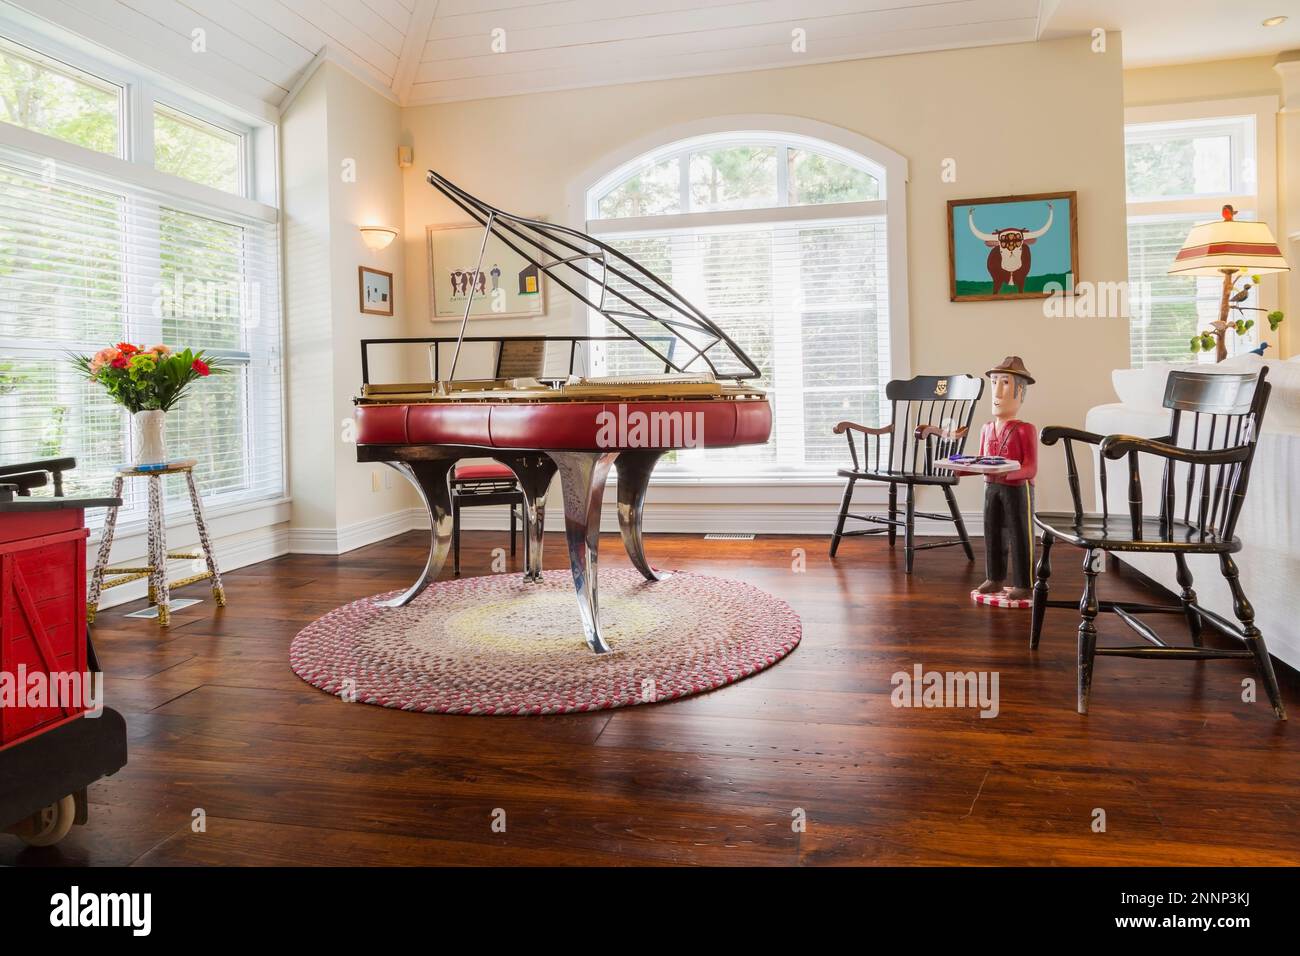 Klavier aus rotem Leder im Stil von Andreas Christensen aus Dänemark, schwarze Holzsessel und Folk Art Objekte im Wohnzimmer mit Eichenboden. Stockfoto